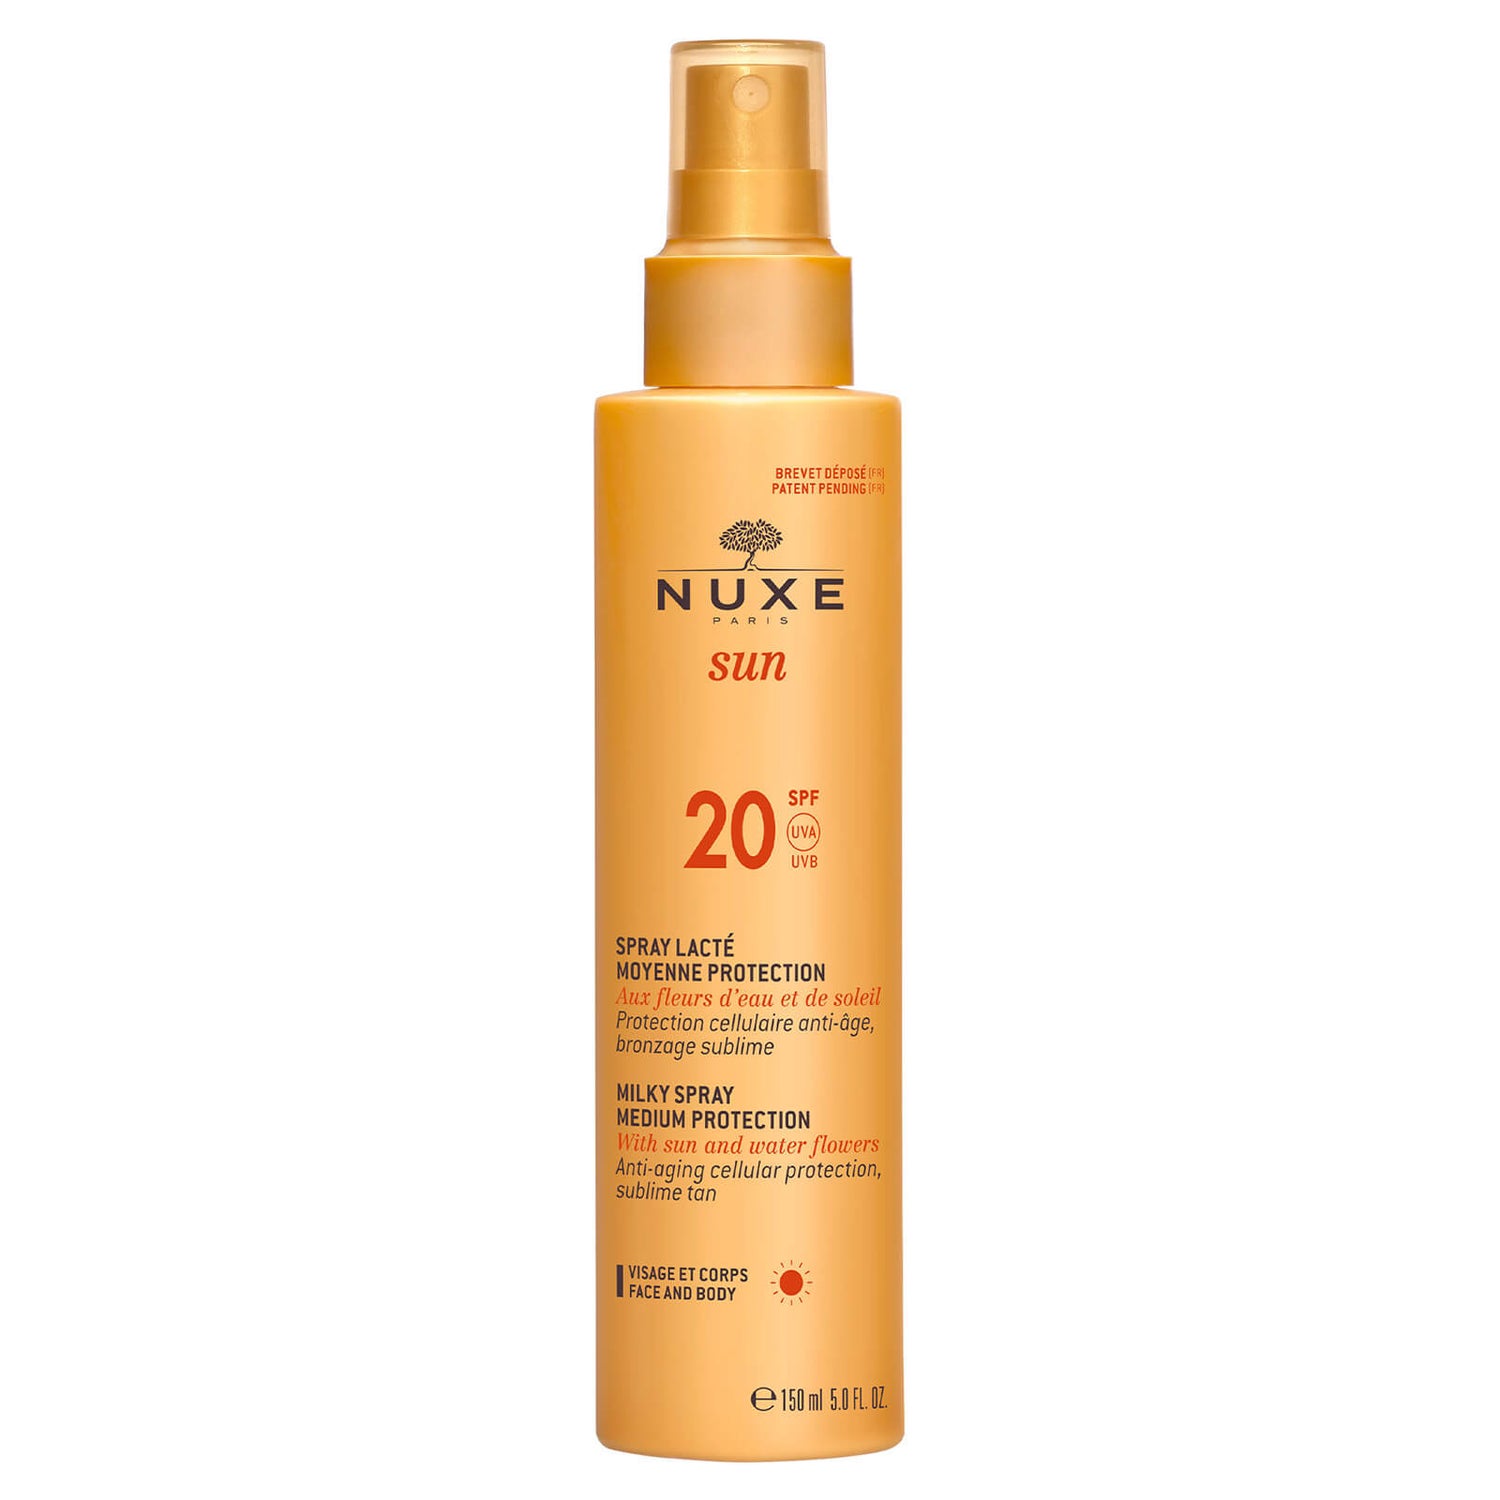 NUXE Sun Milky Spray Face and Body SPF 20 (150ml) - Exclusive